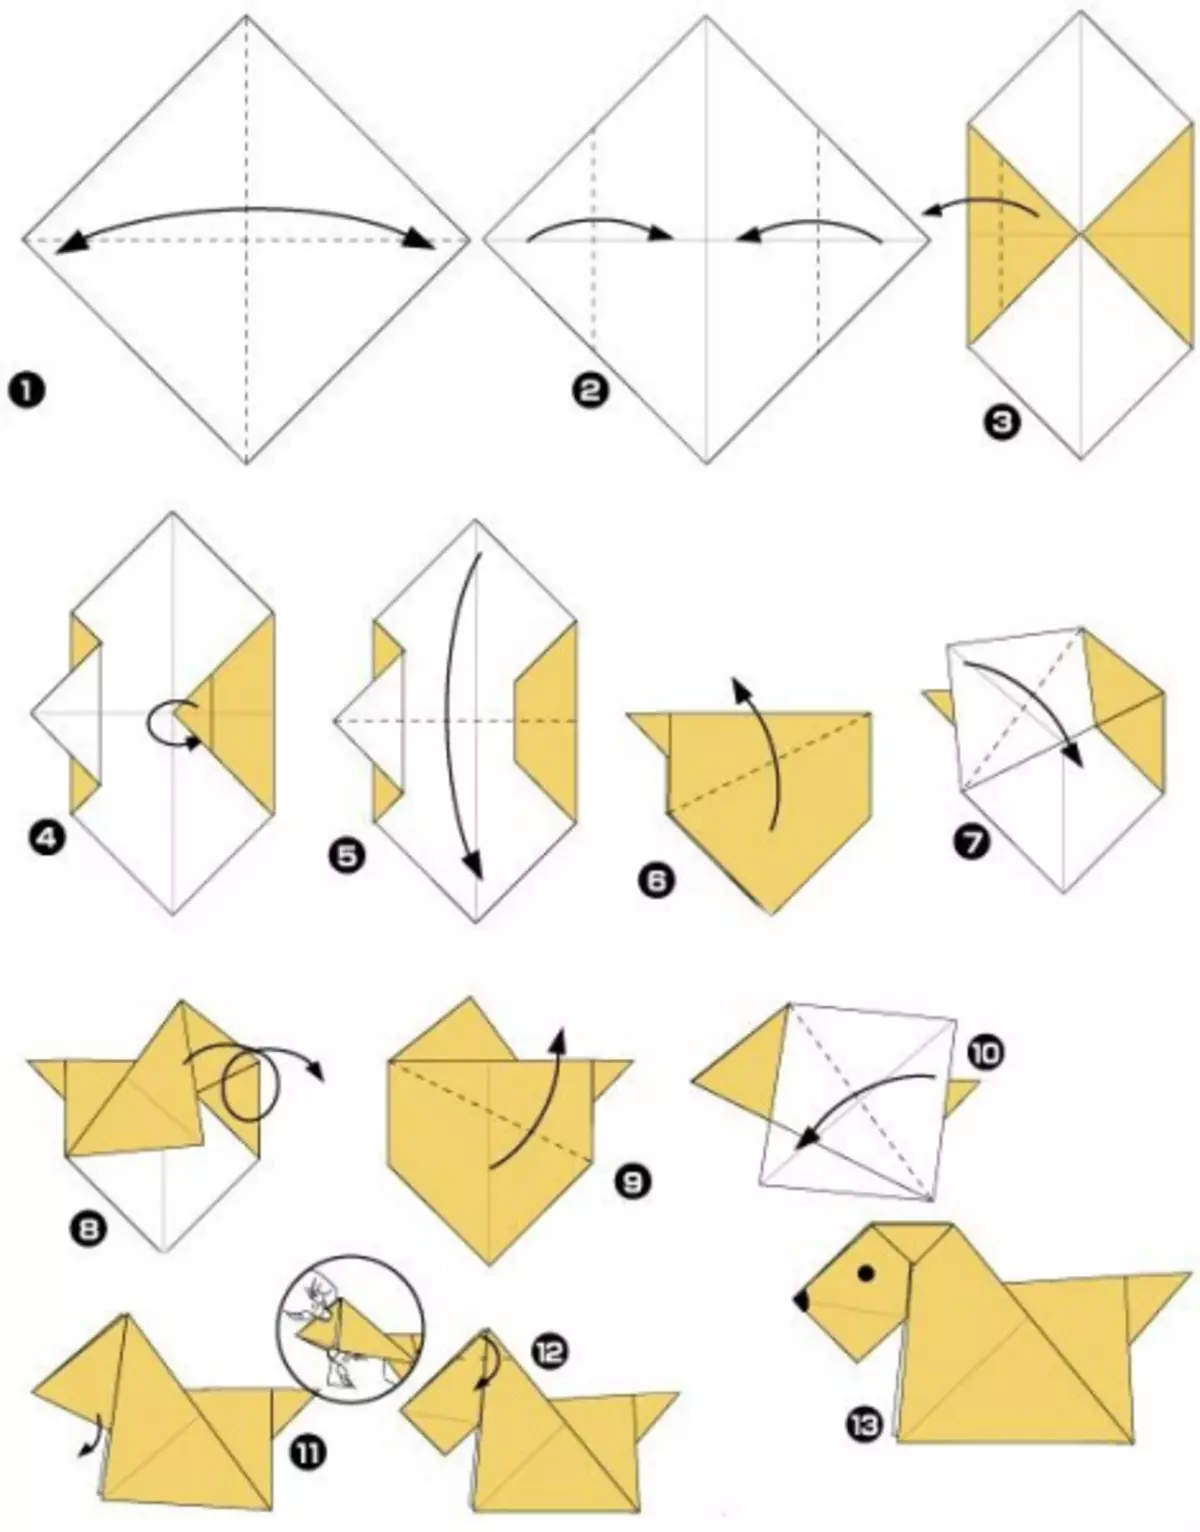 Как сделать маленький оригами. Инструкция как делать оригами из бумаги. Оригами из бумаги собака схема для начинающих. Оригами из бумаги собака схема для детей. Оригами собачка пошаговая инструкция для детей.